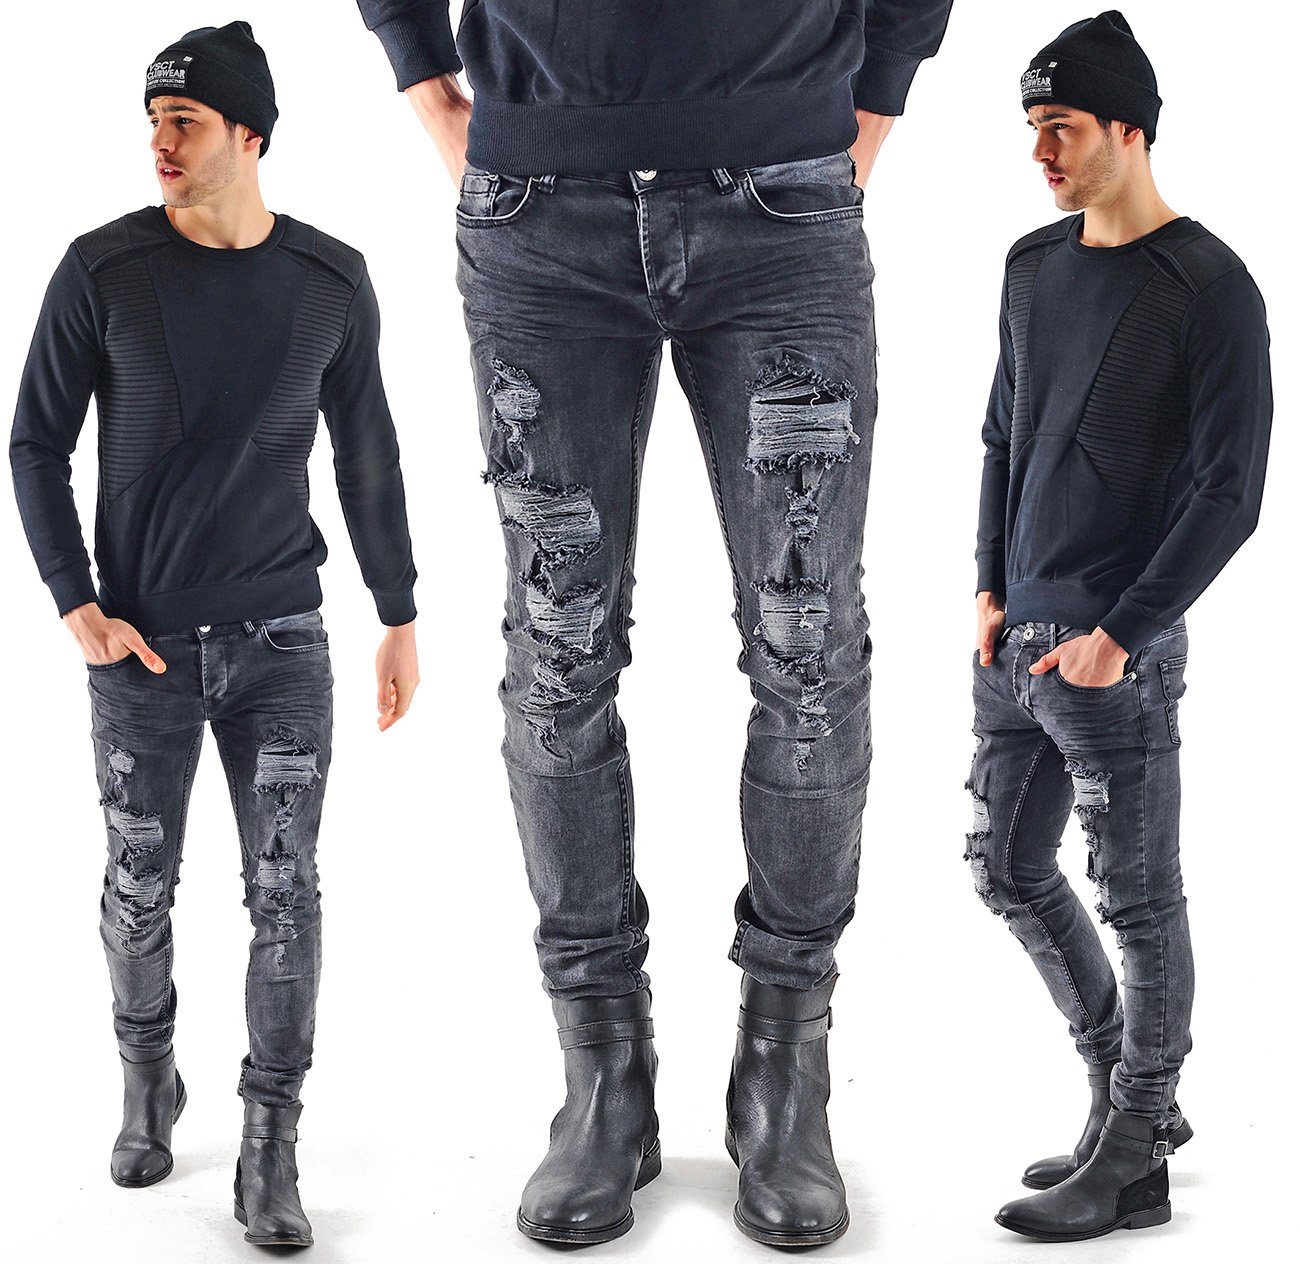 Männer-Hose Destroyed-Jeans Jeans Heavy Herren Keno Destroyed Rock Look Fit Jeans Destroyed Slim VSCT VSCT